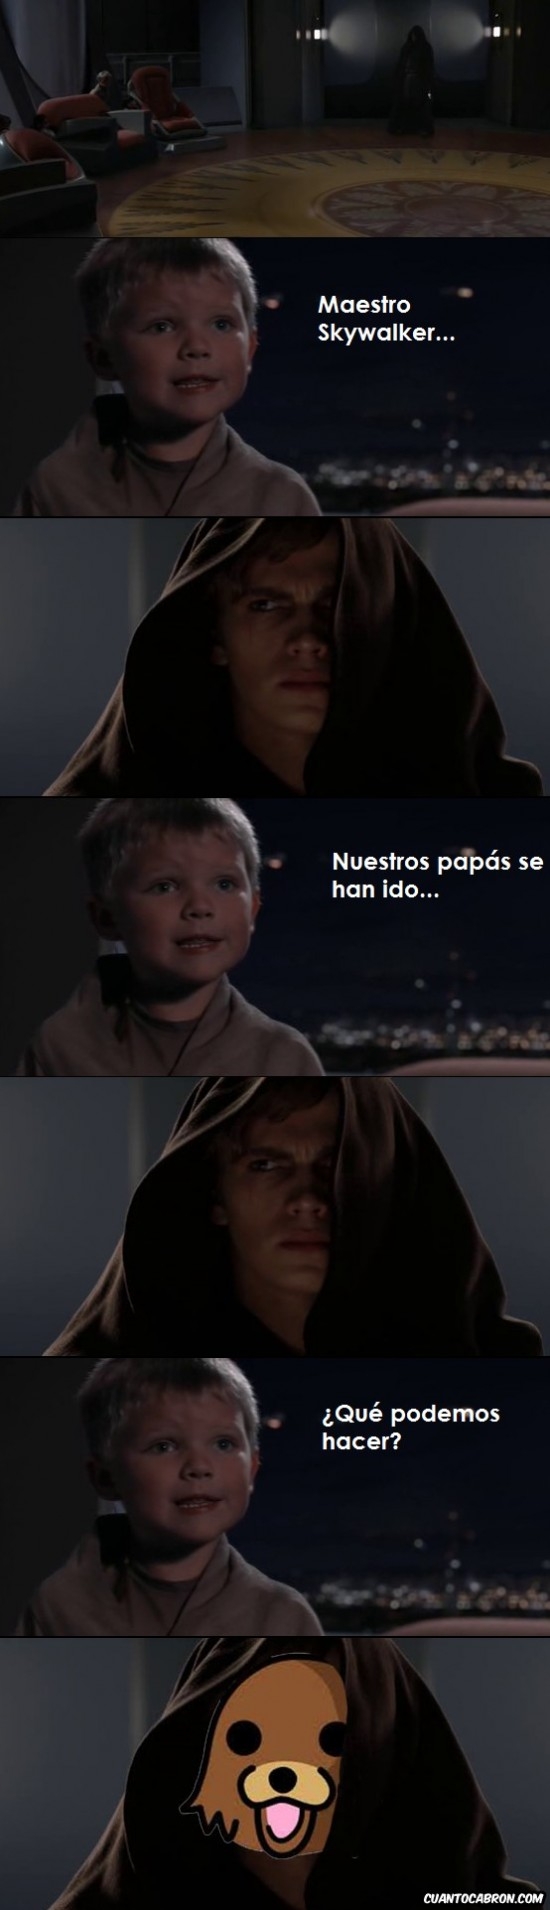 Otros - Anakin Skywalker mostrando su verdadero lado oscuro